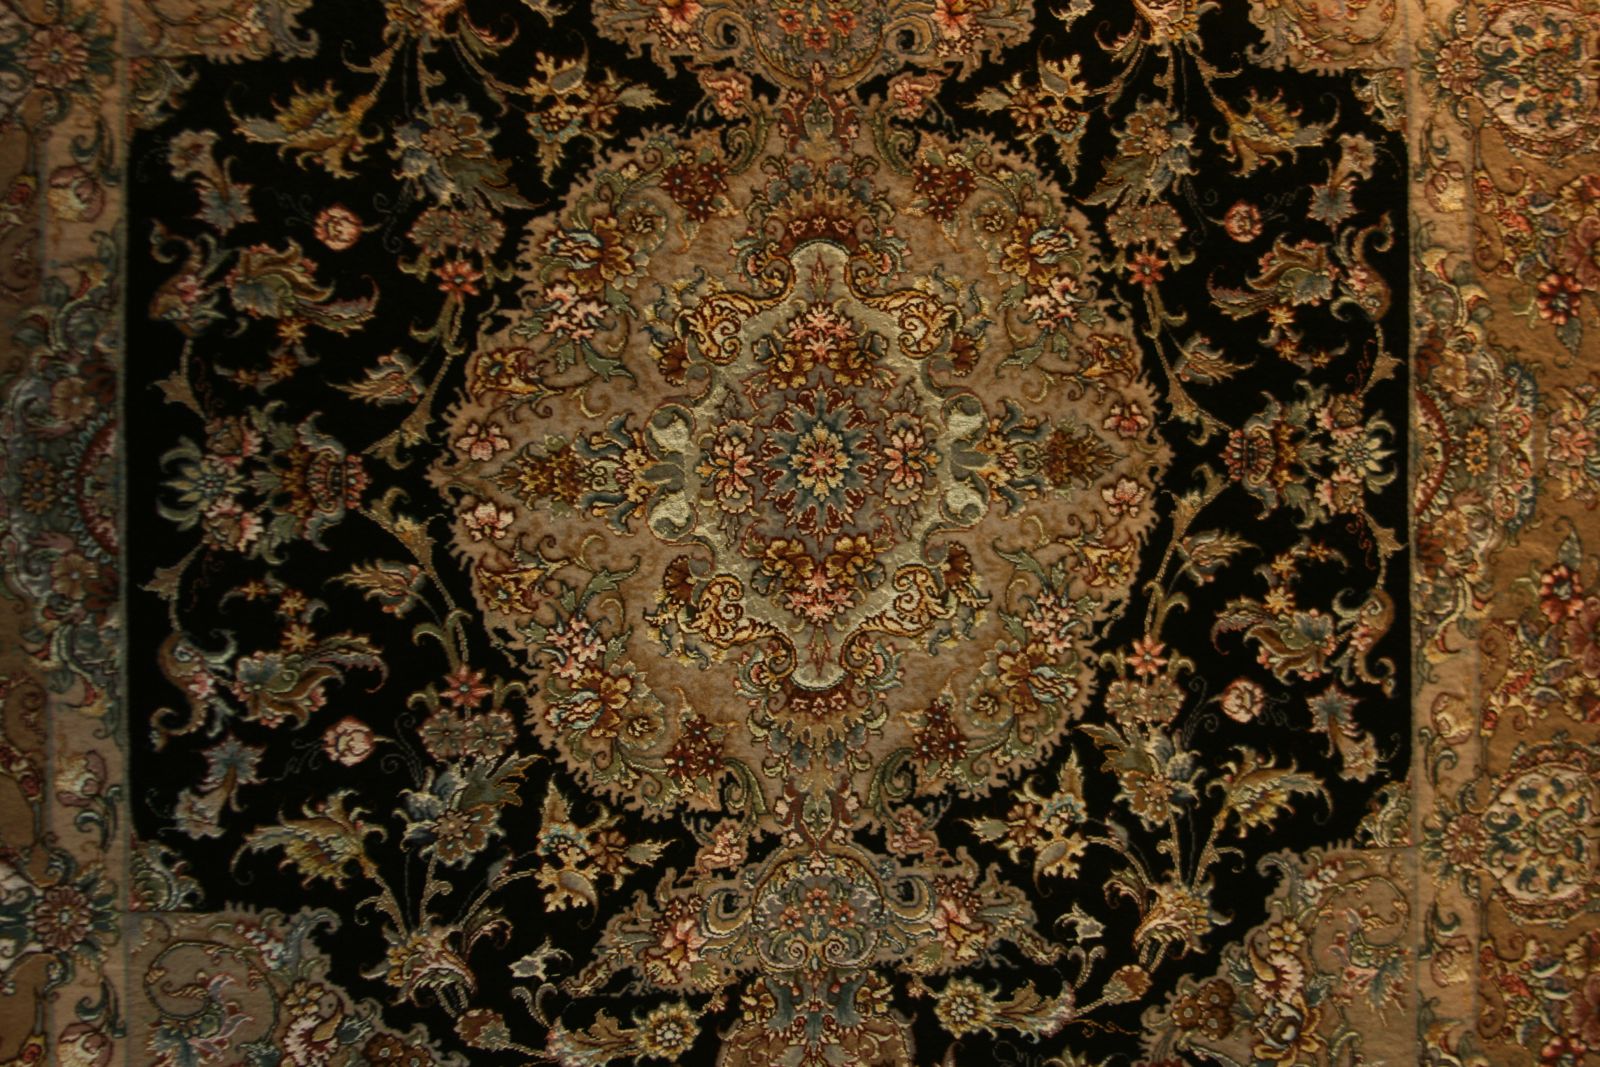 A világ legértékesebb perzsaszőnyege az 1500-as évekből Isfahanból származó Sah Ábbasz medalion mintájú arany és ezüst szállal csomózott selyem szőnyeg.